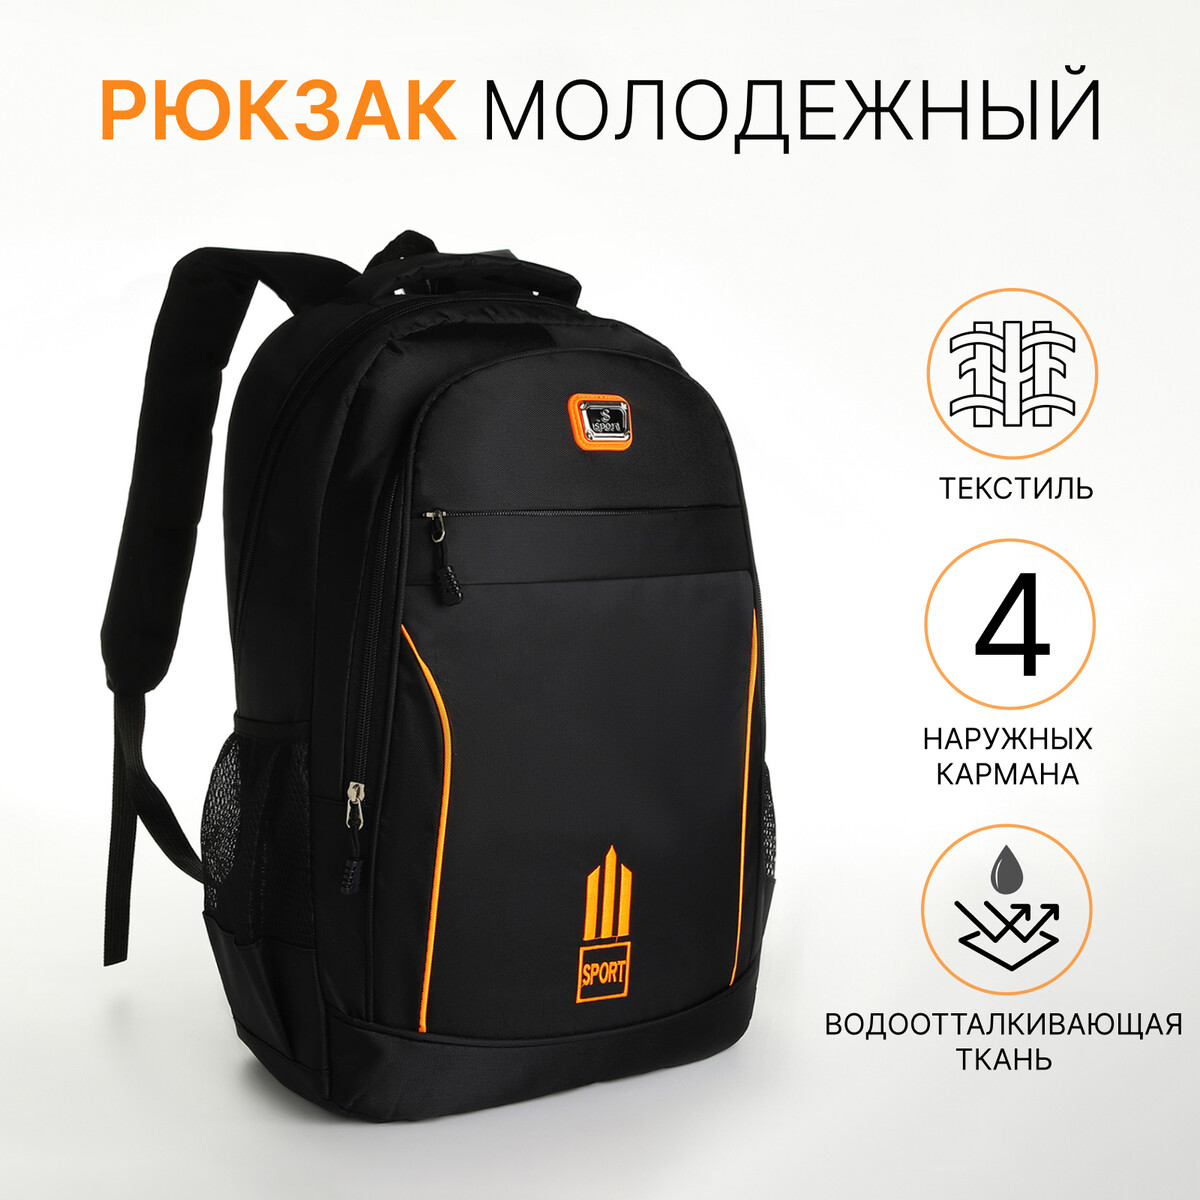 Рюкзак молодежный из текстиля на молнии, 4 кармана, цвет черный/оранжевый рюкзак молодежный grizzly анатомический оранжевый rb 456 4 1